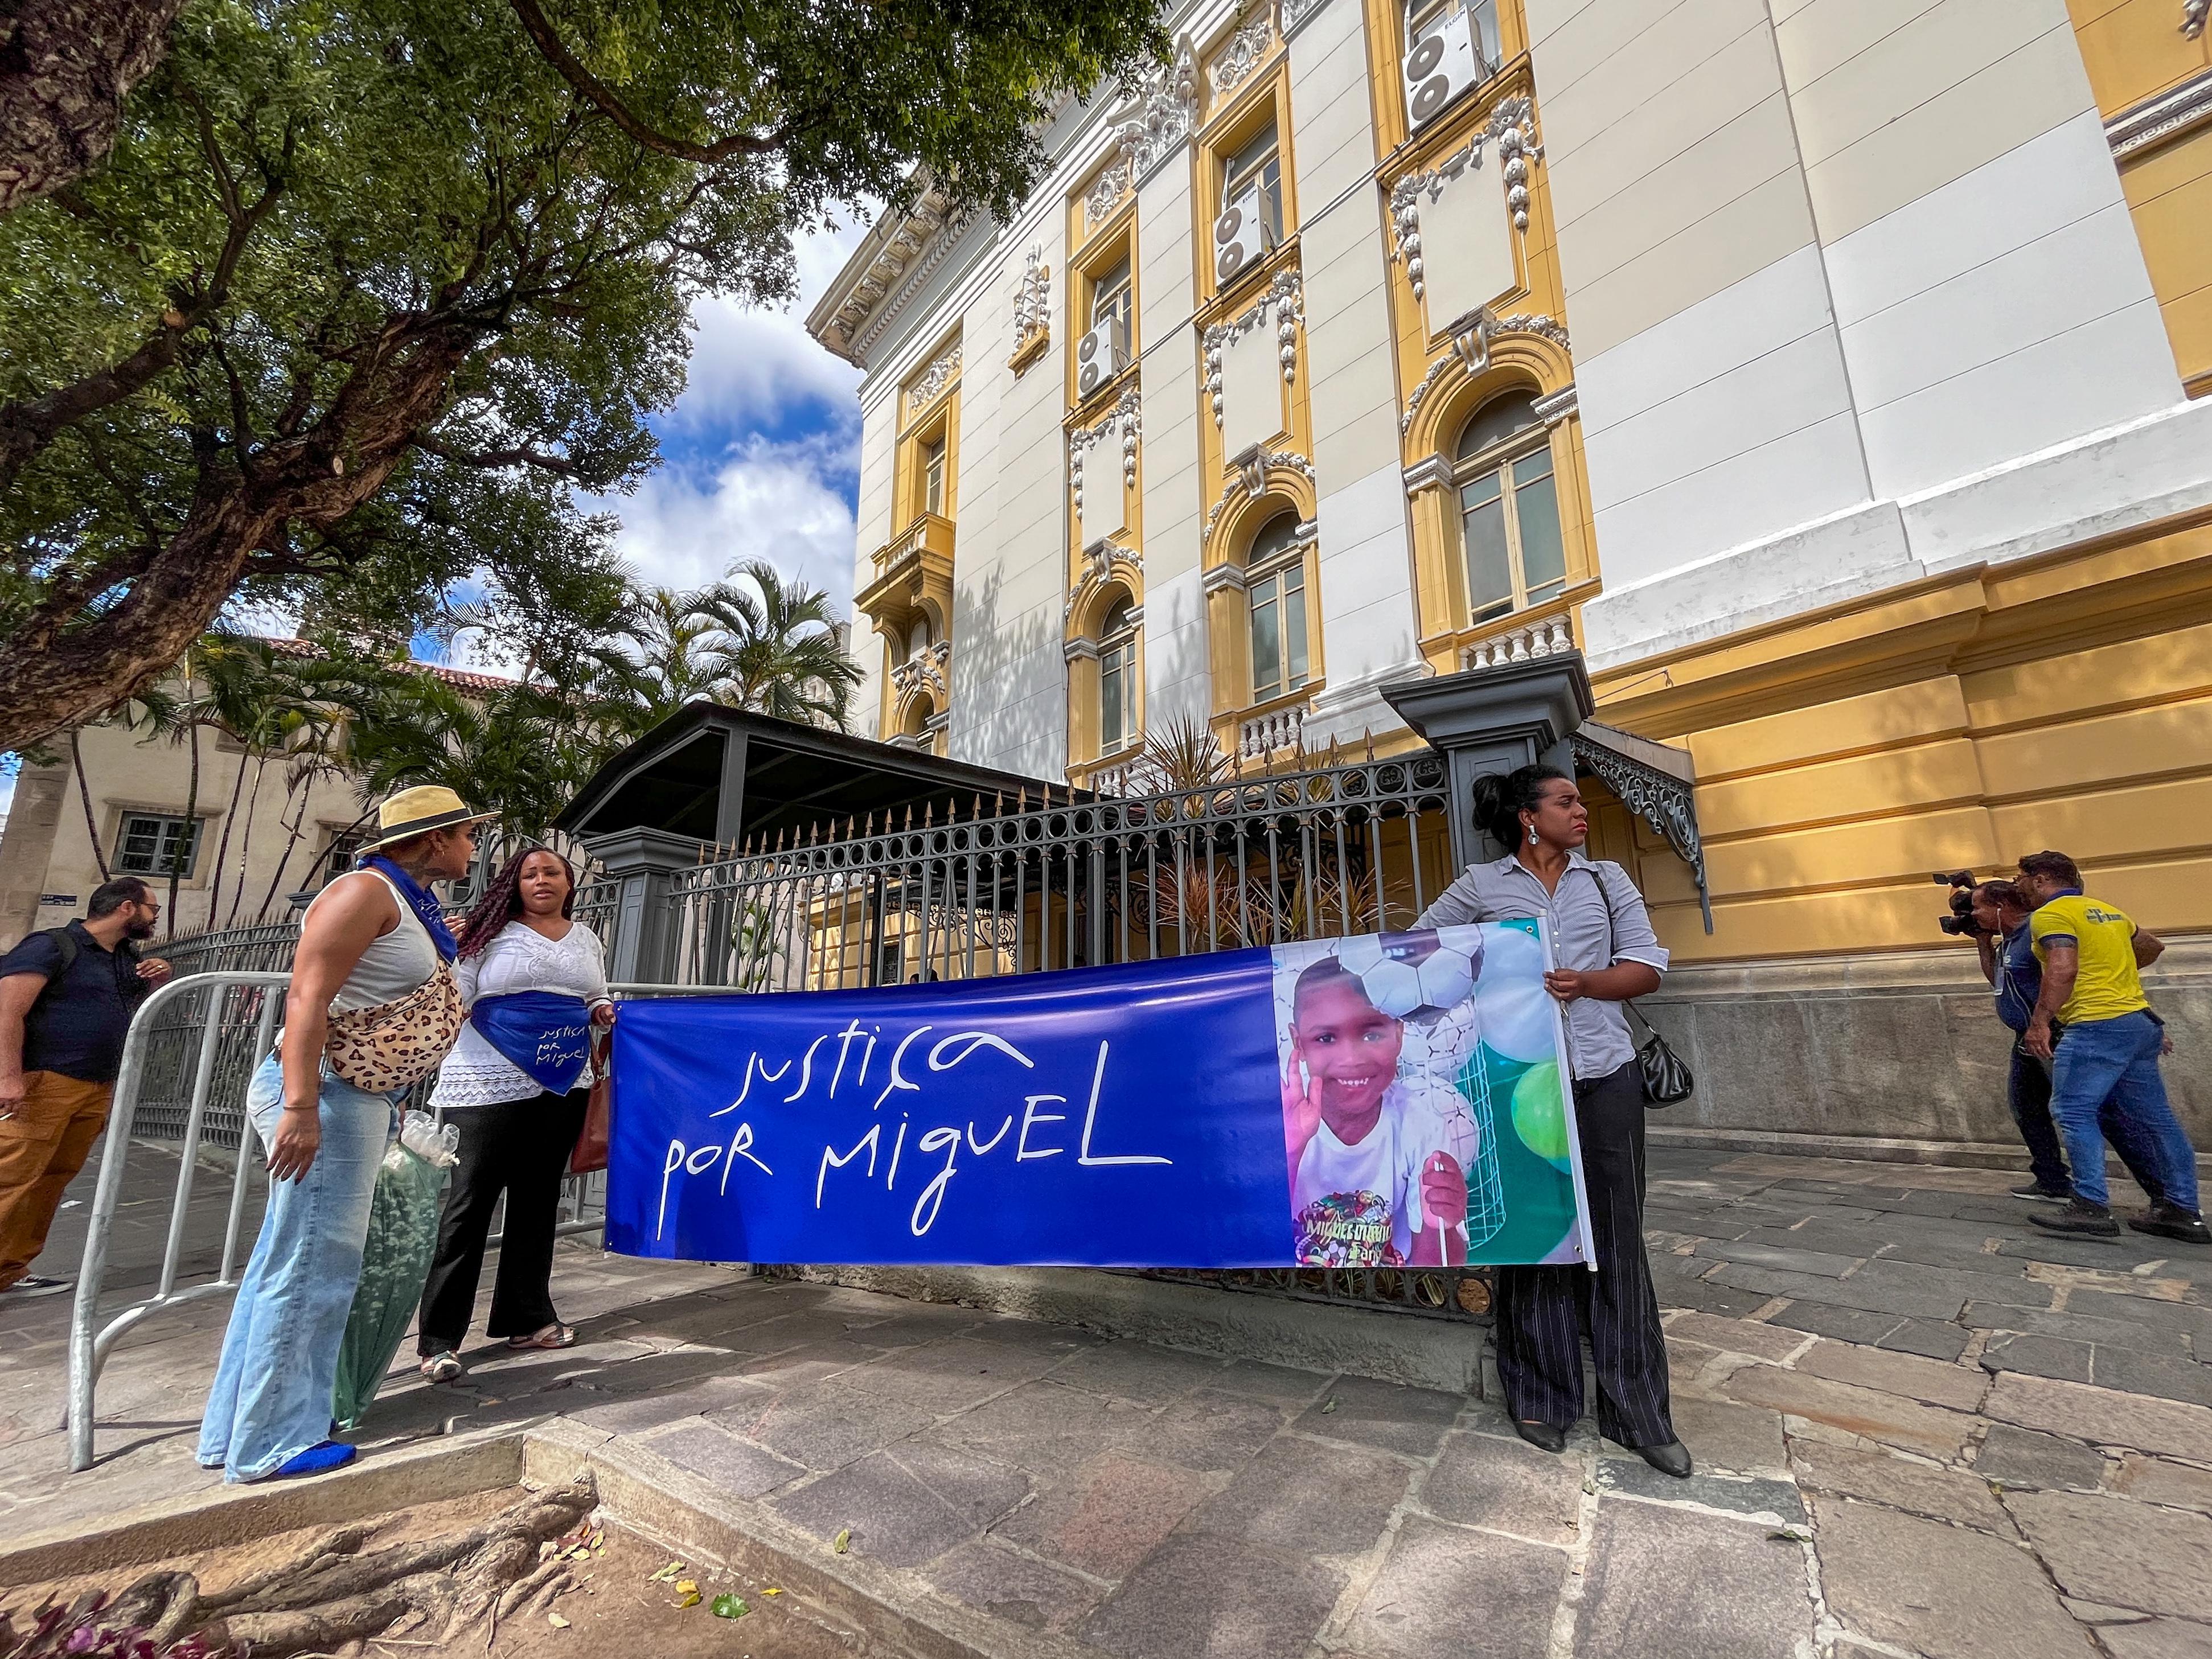 Parentes de Miguel levaram faixa para pedir Justia  (Foto: Ruan Pablo/DP)